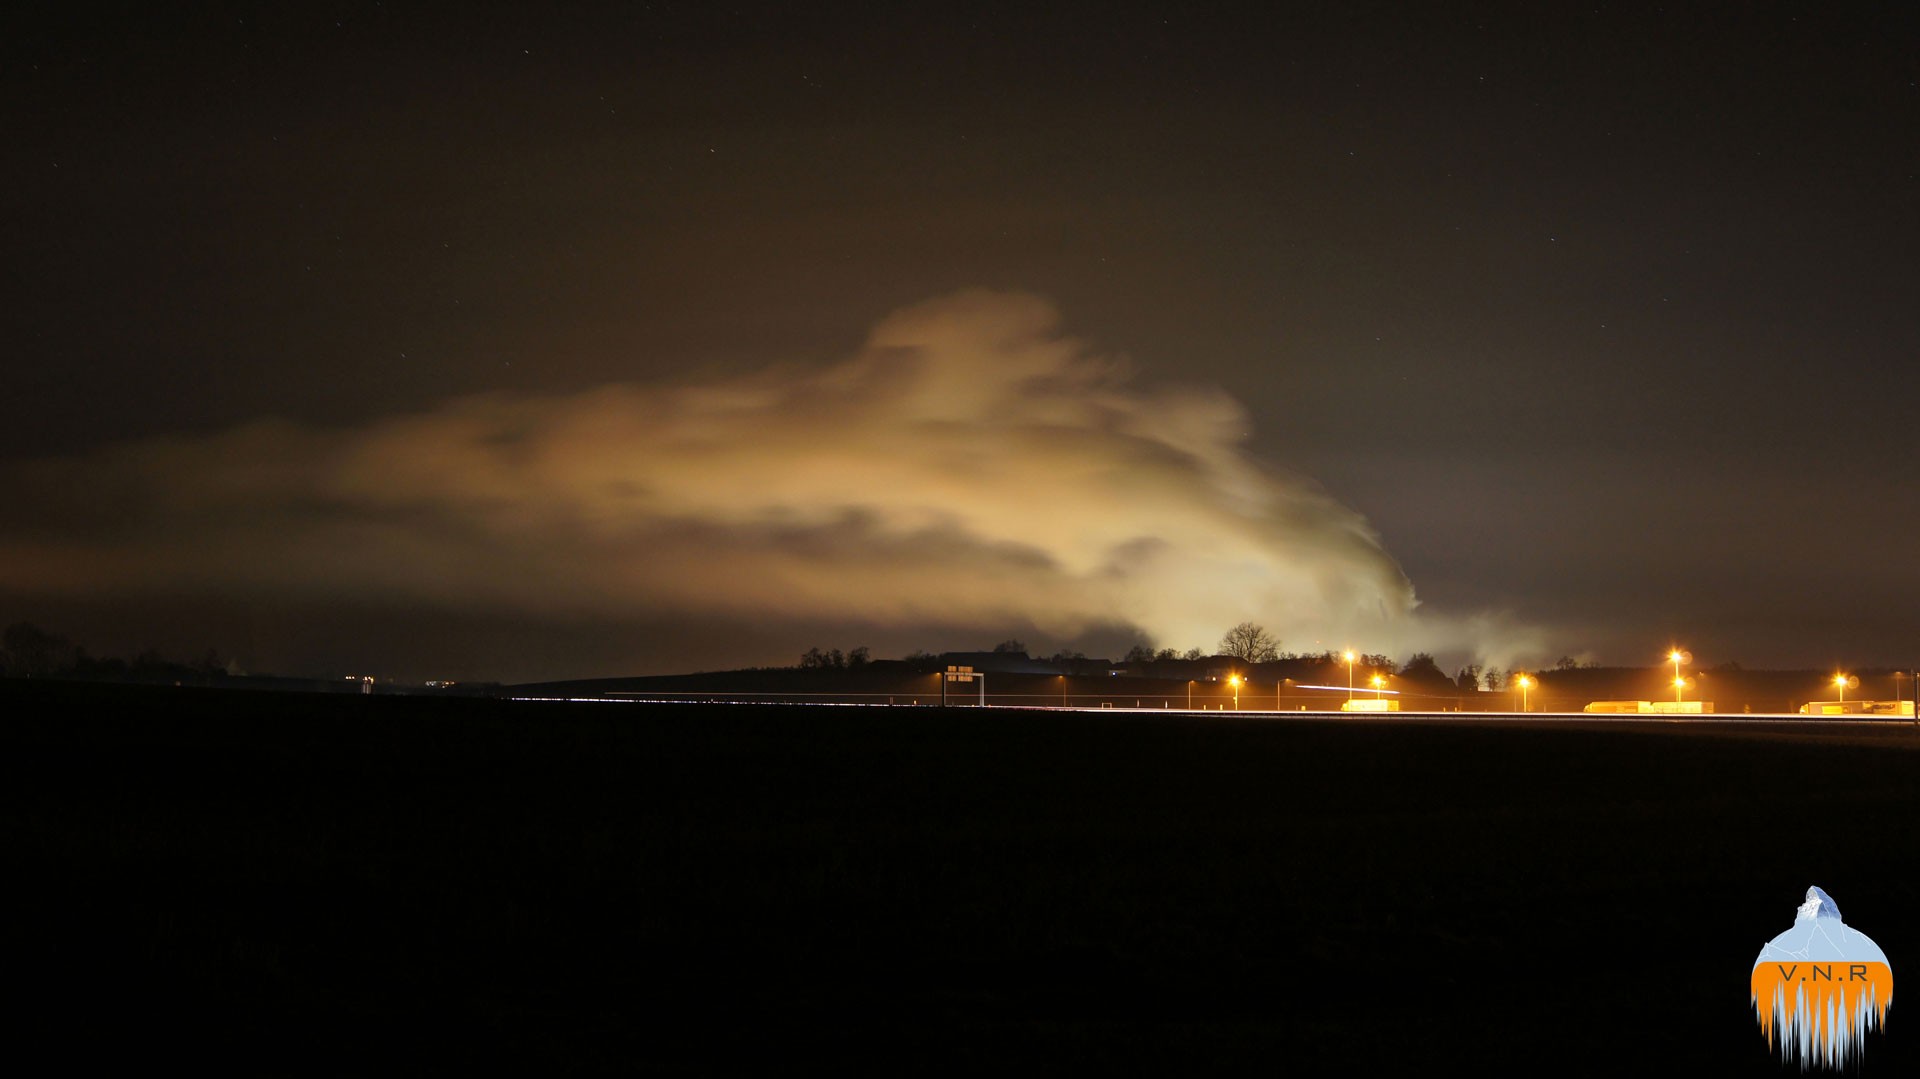 Factory at night